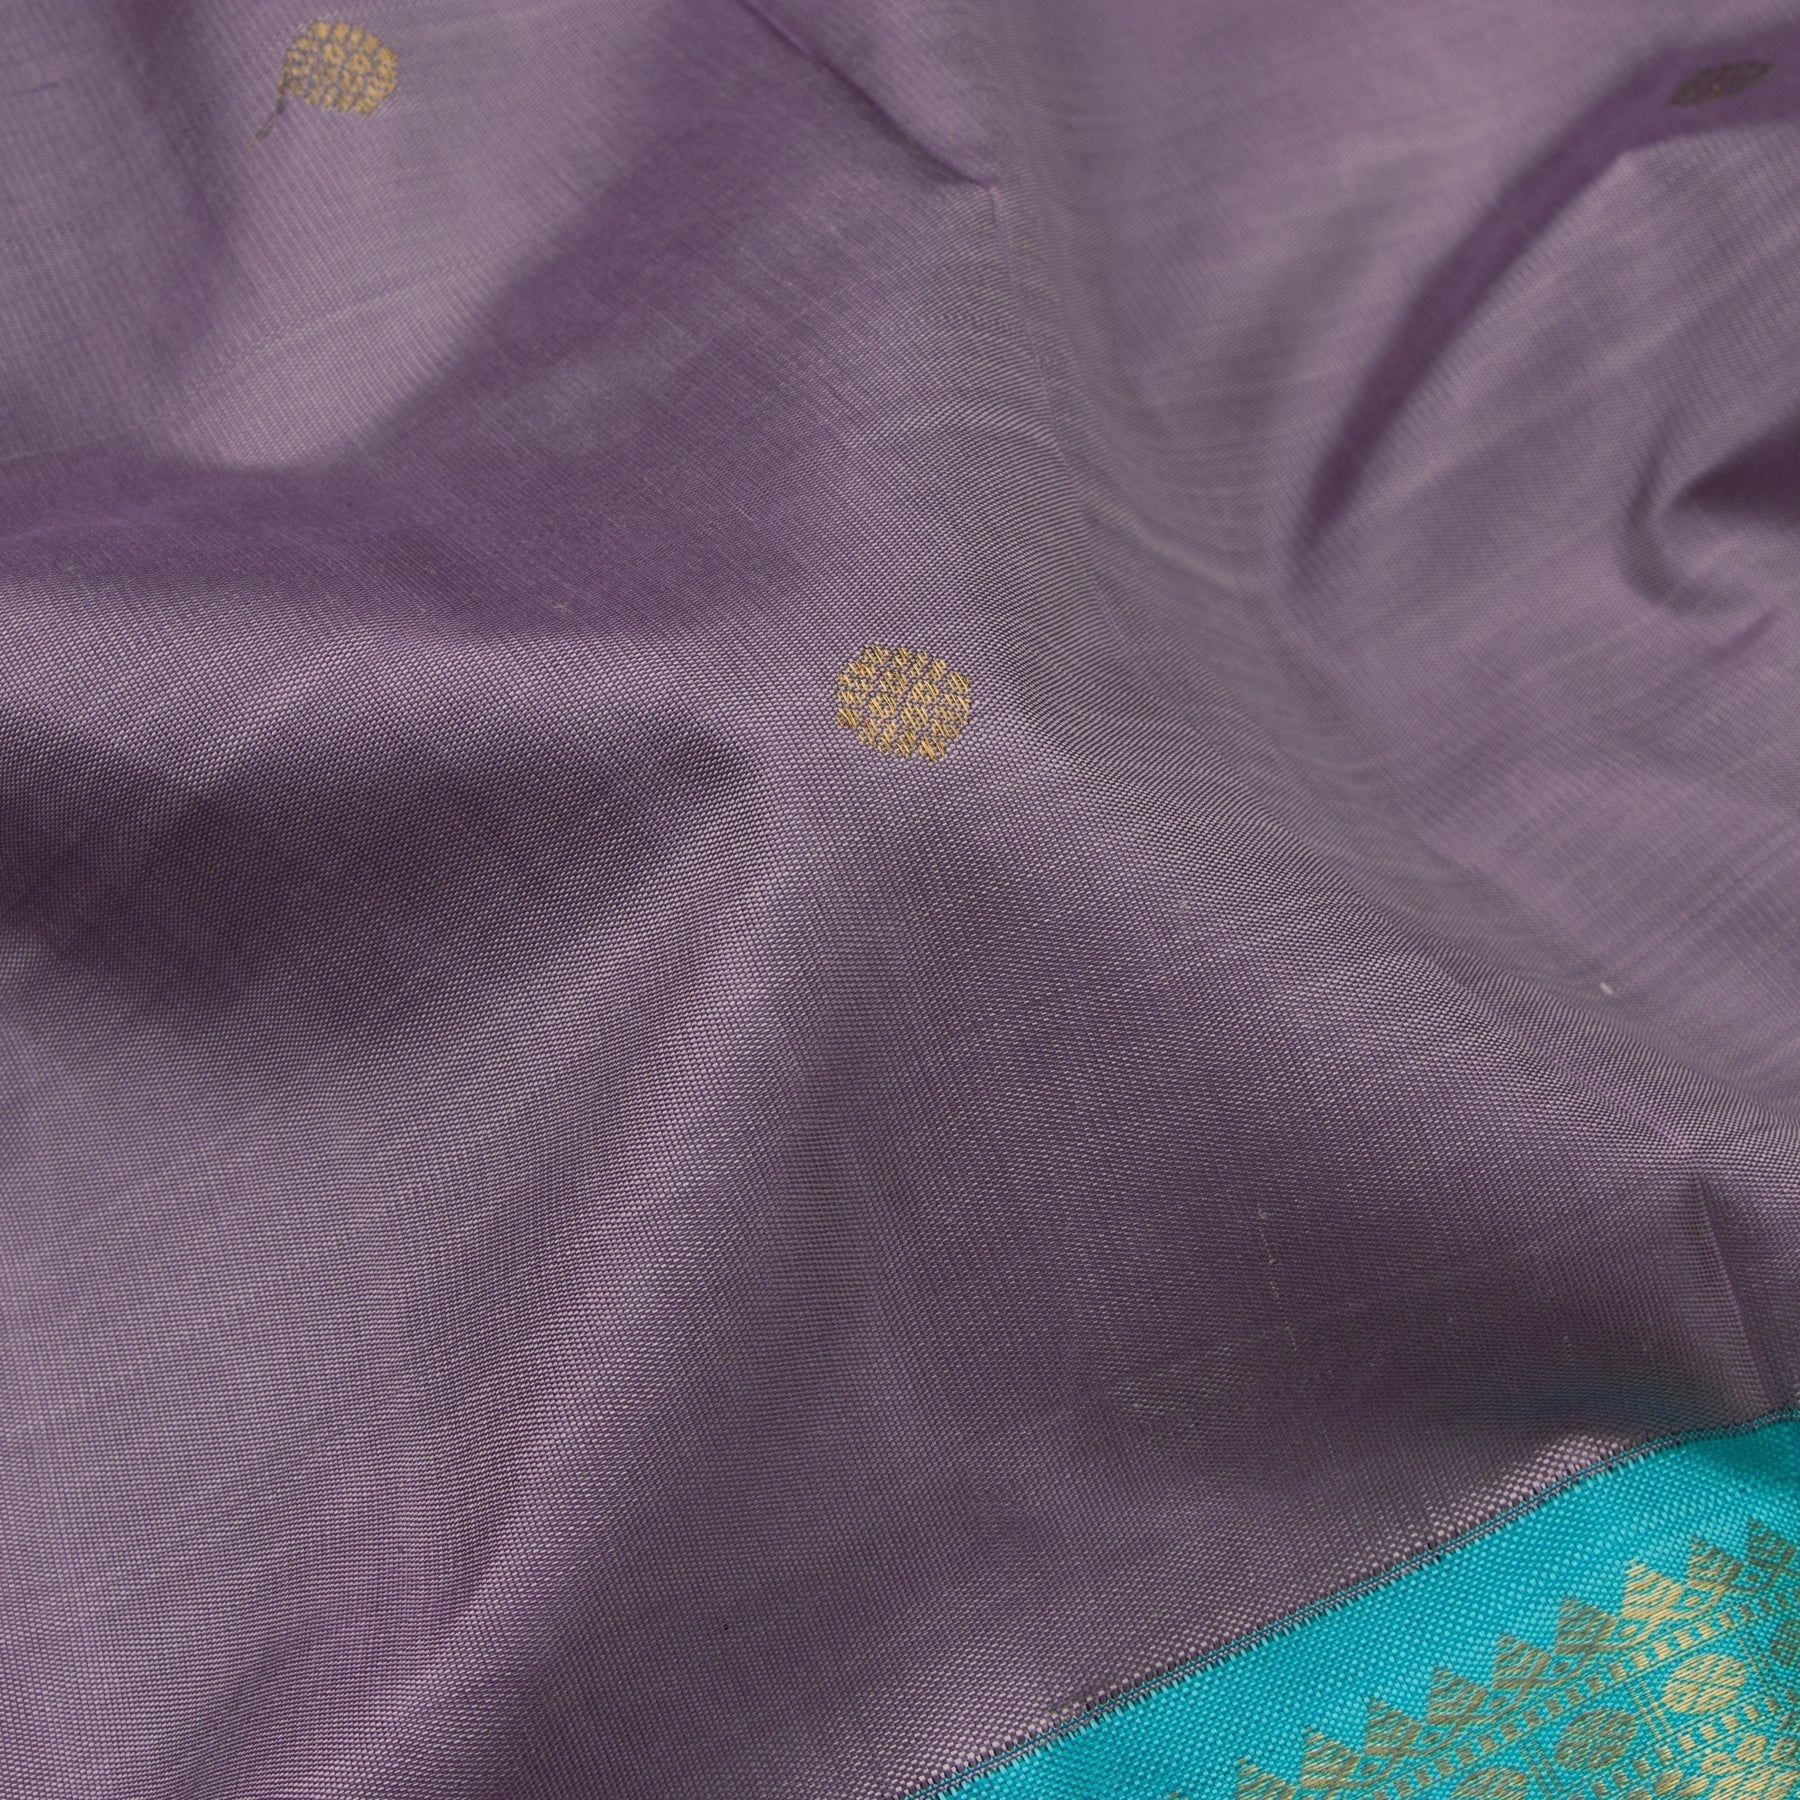 Kanakavalli Kanjivaram Silk Sari 22-110-HS001-07529 - Fabric View